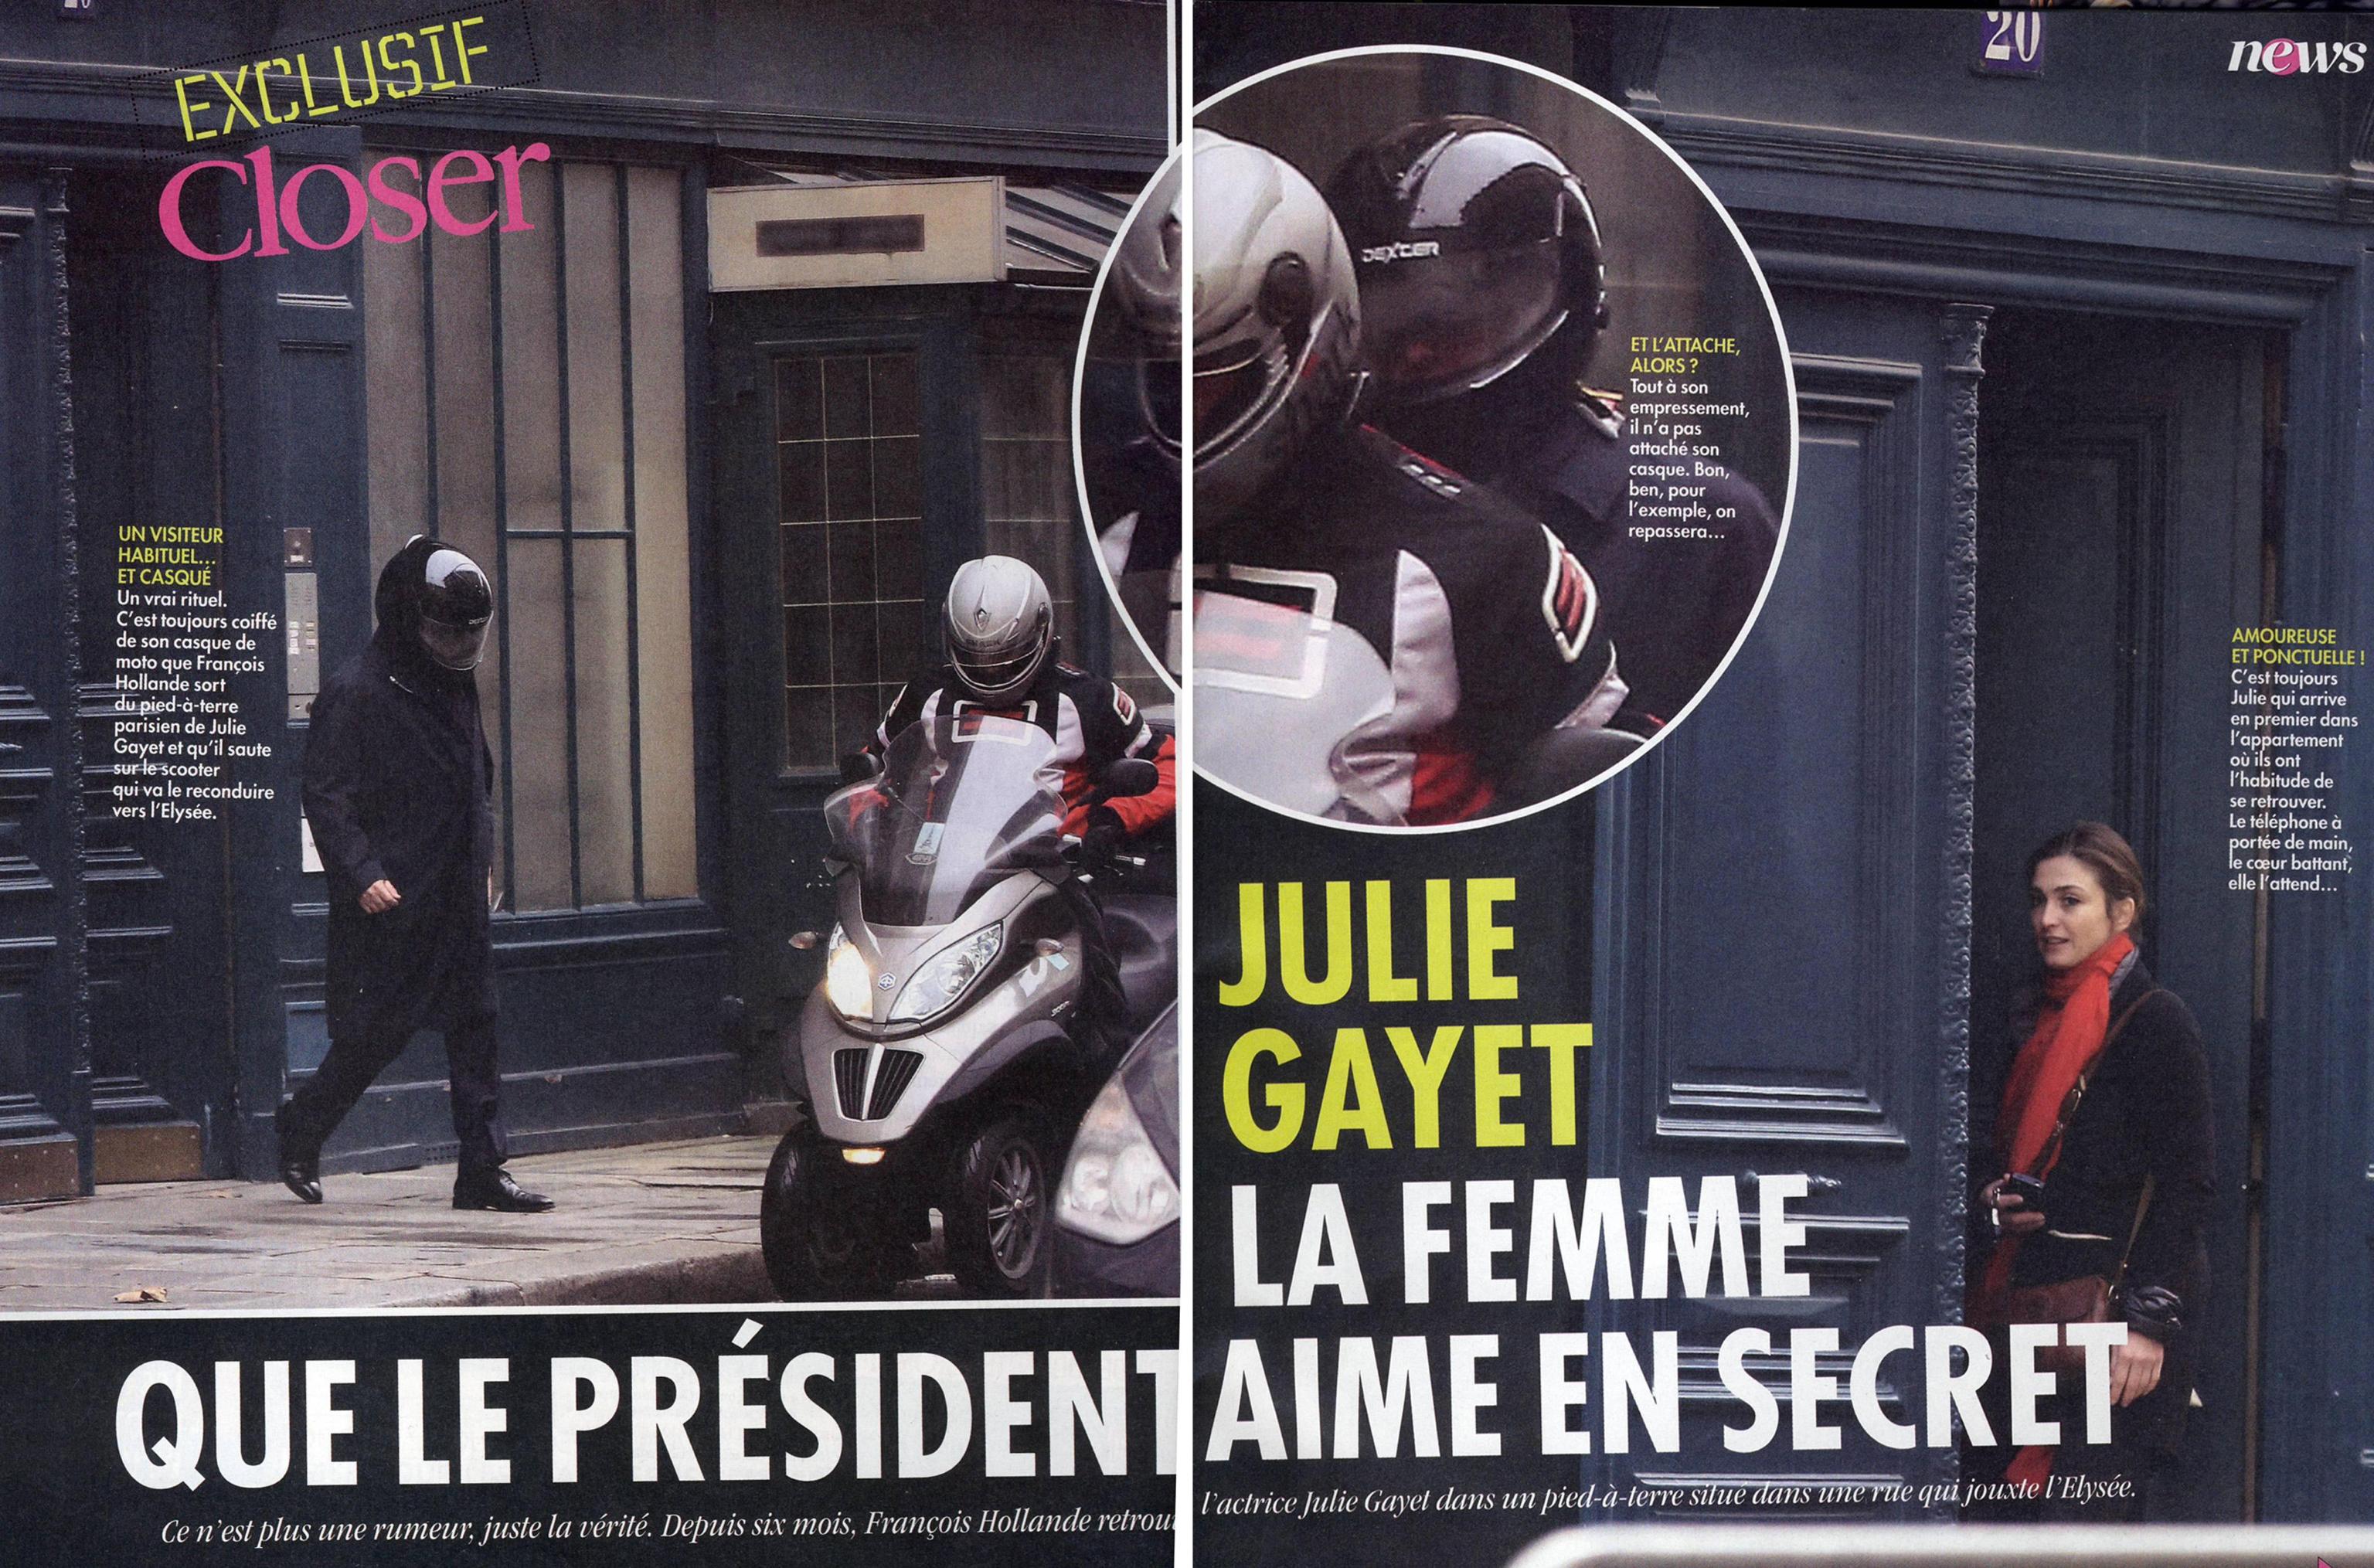 Da Mitterand a Hollande, i guai dei presidenti francesi con la deuxième dame